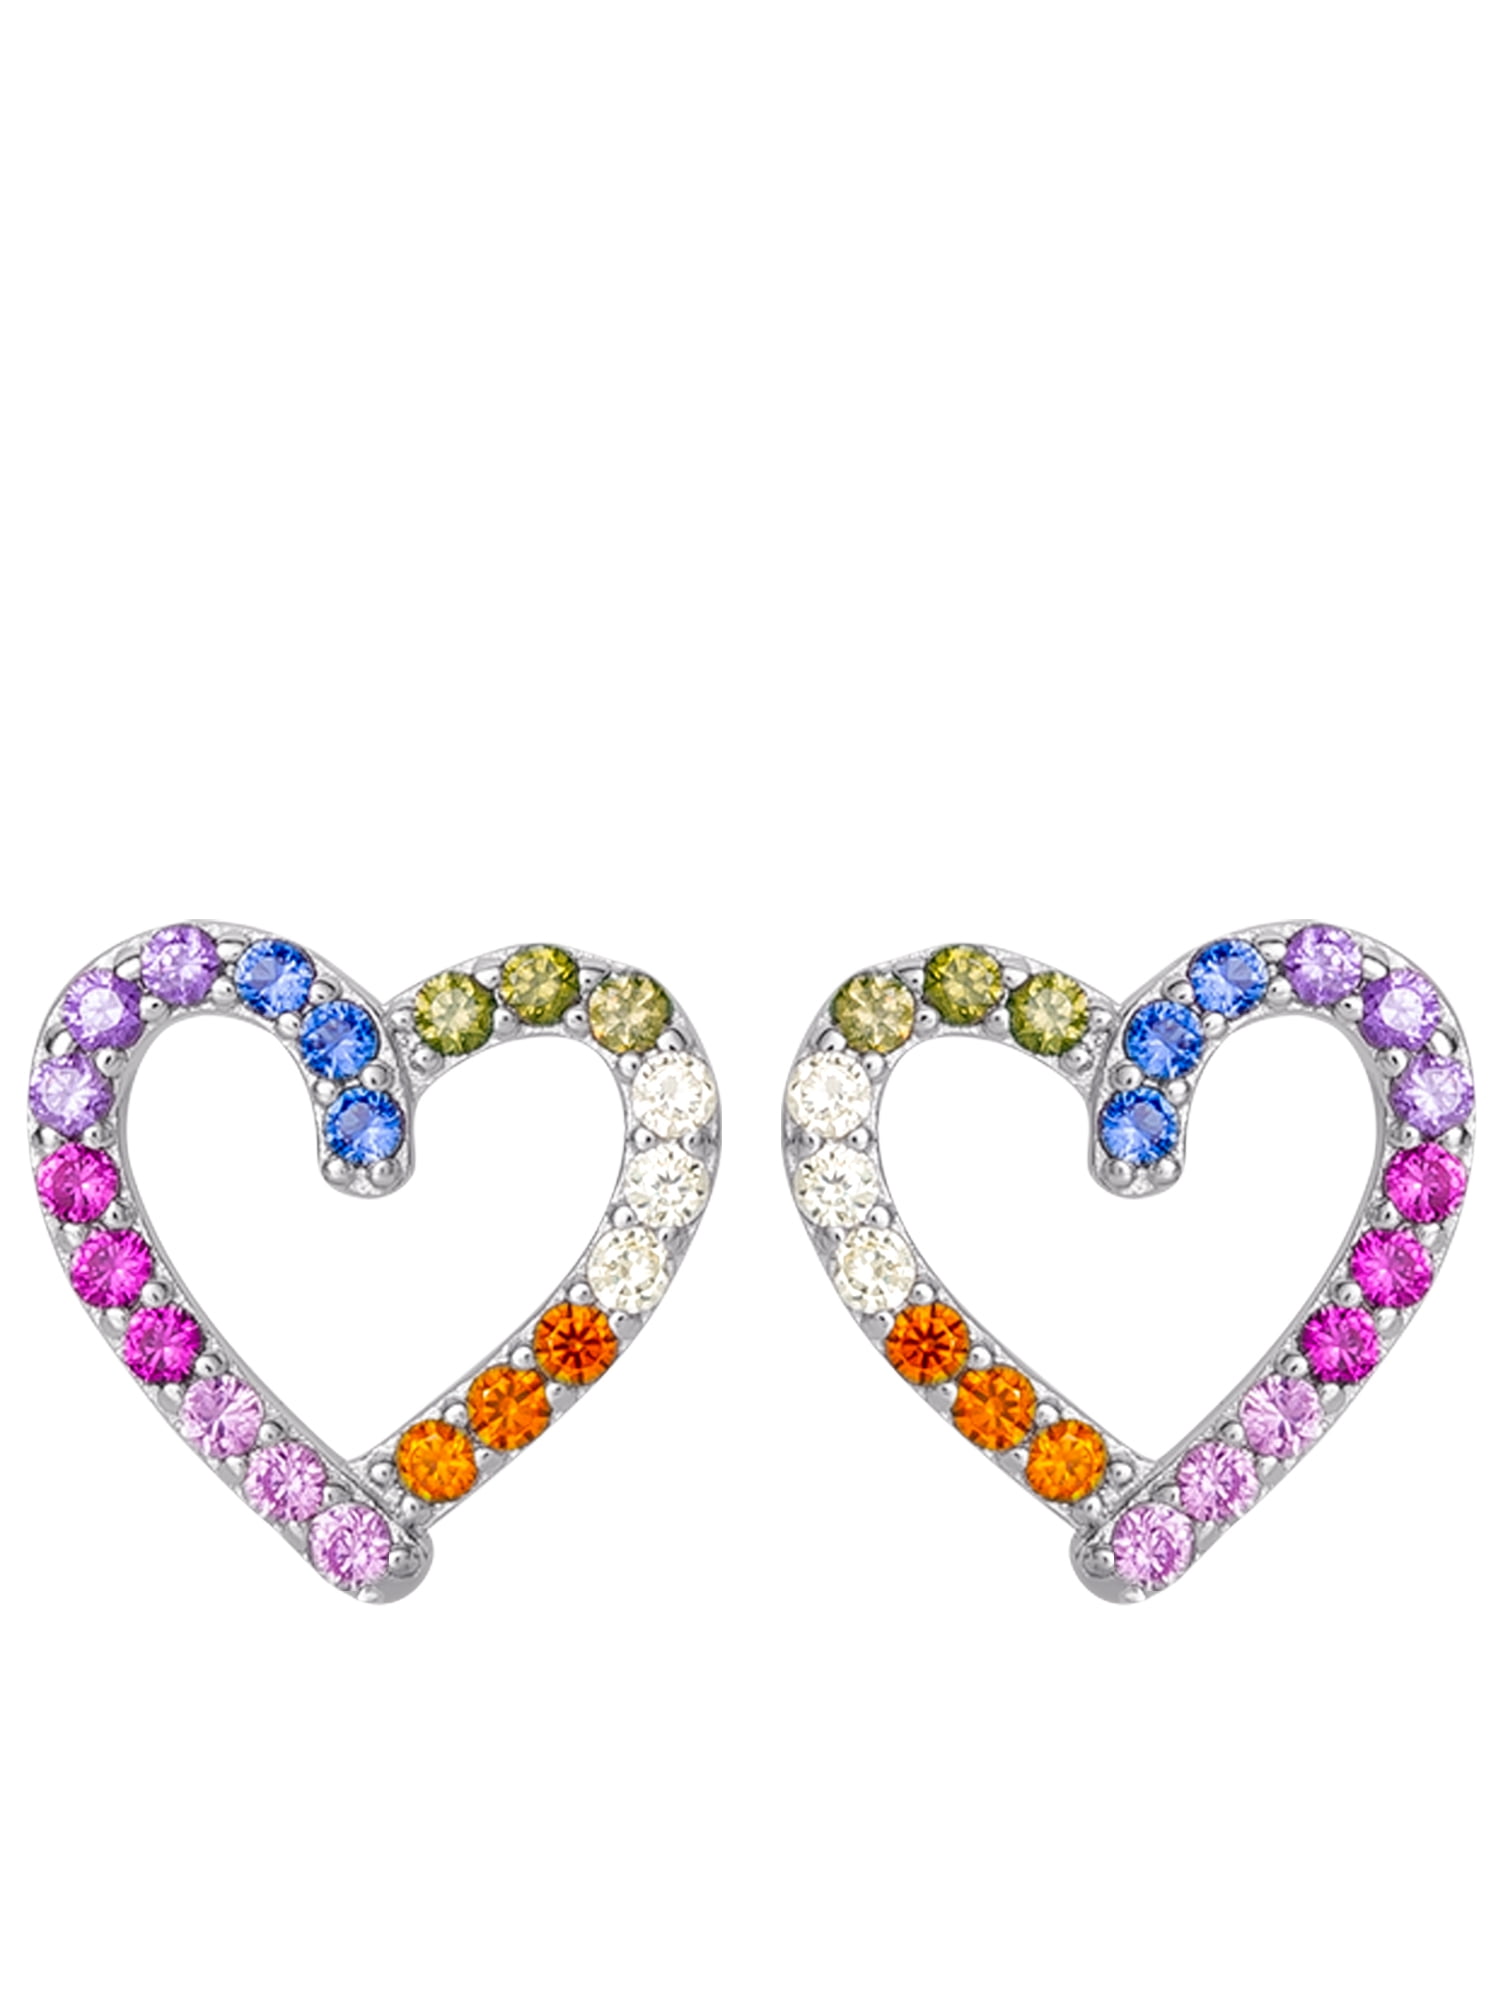 Rainbow Gold Crystal Zircon Heart Earrings Ear Stud Women Wedding Party Jewelry 